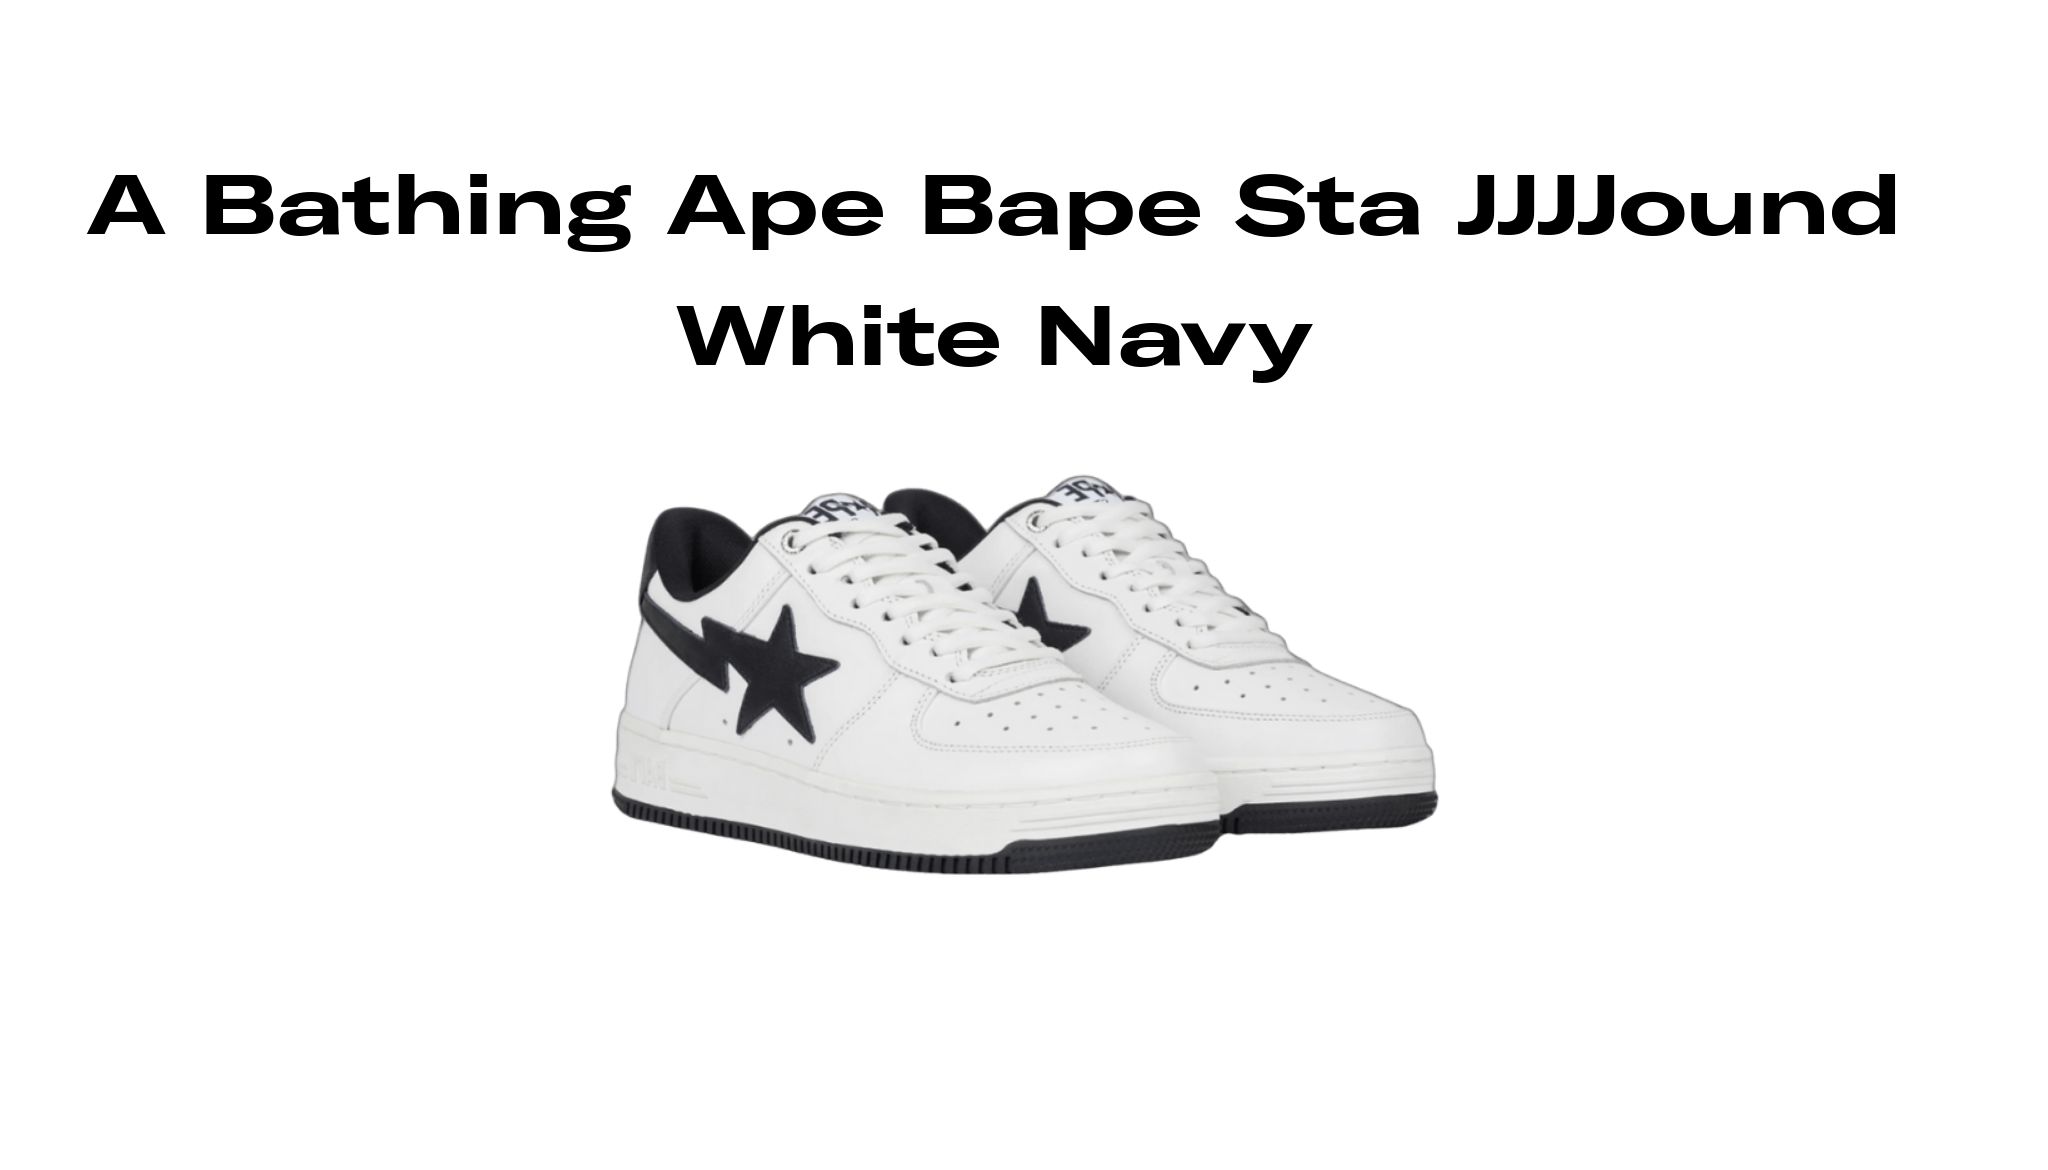 JJJJound × BAPE STA Navy スニーカー 靴 メンズ 安心の定価販売